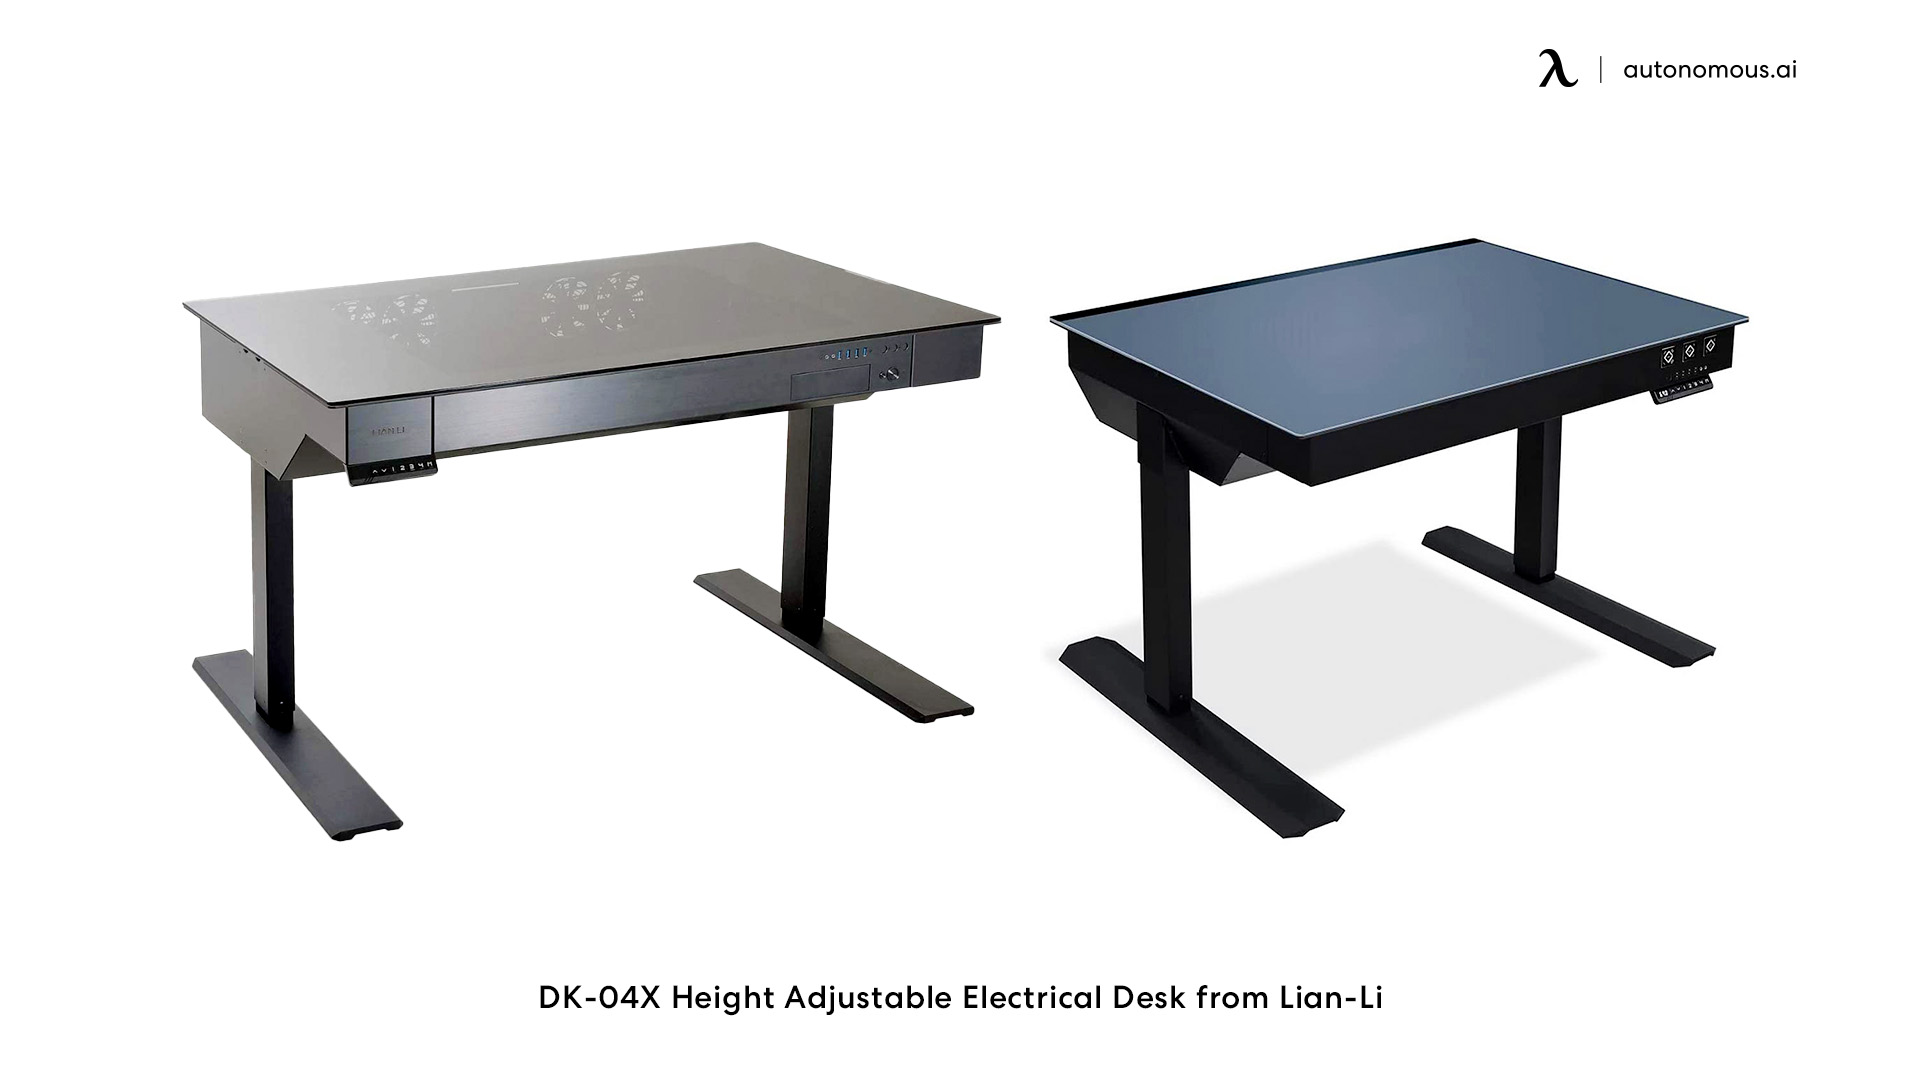 DK-04X Height Adjustable Electrical Desk from Lian-Li